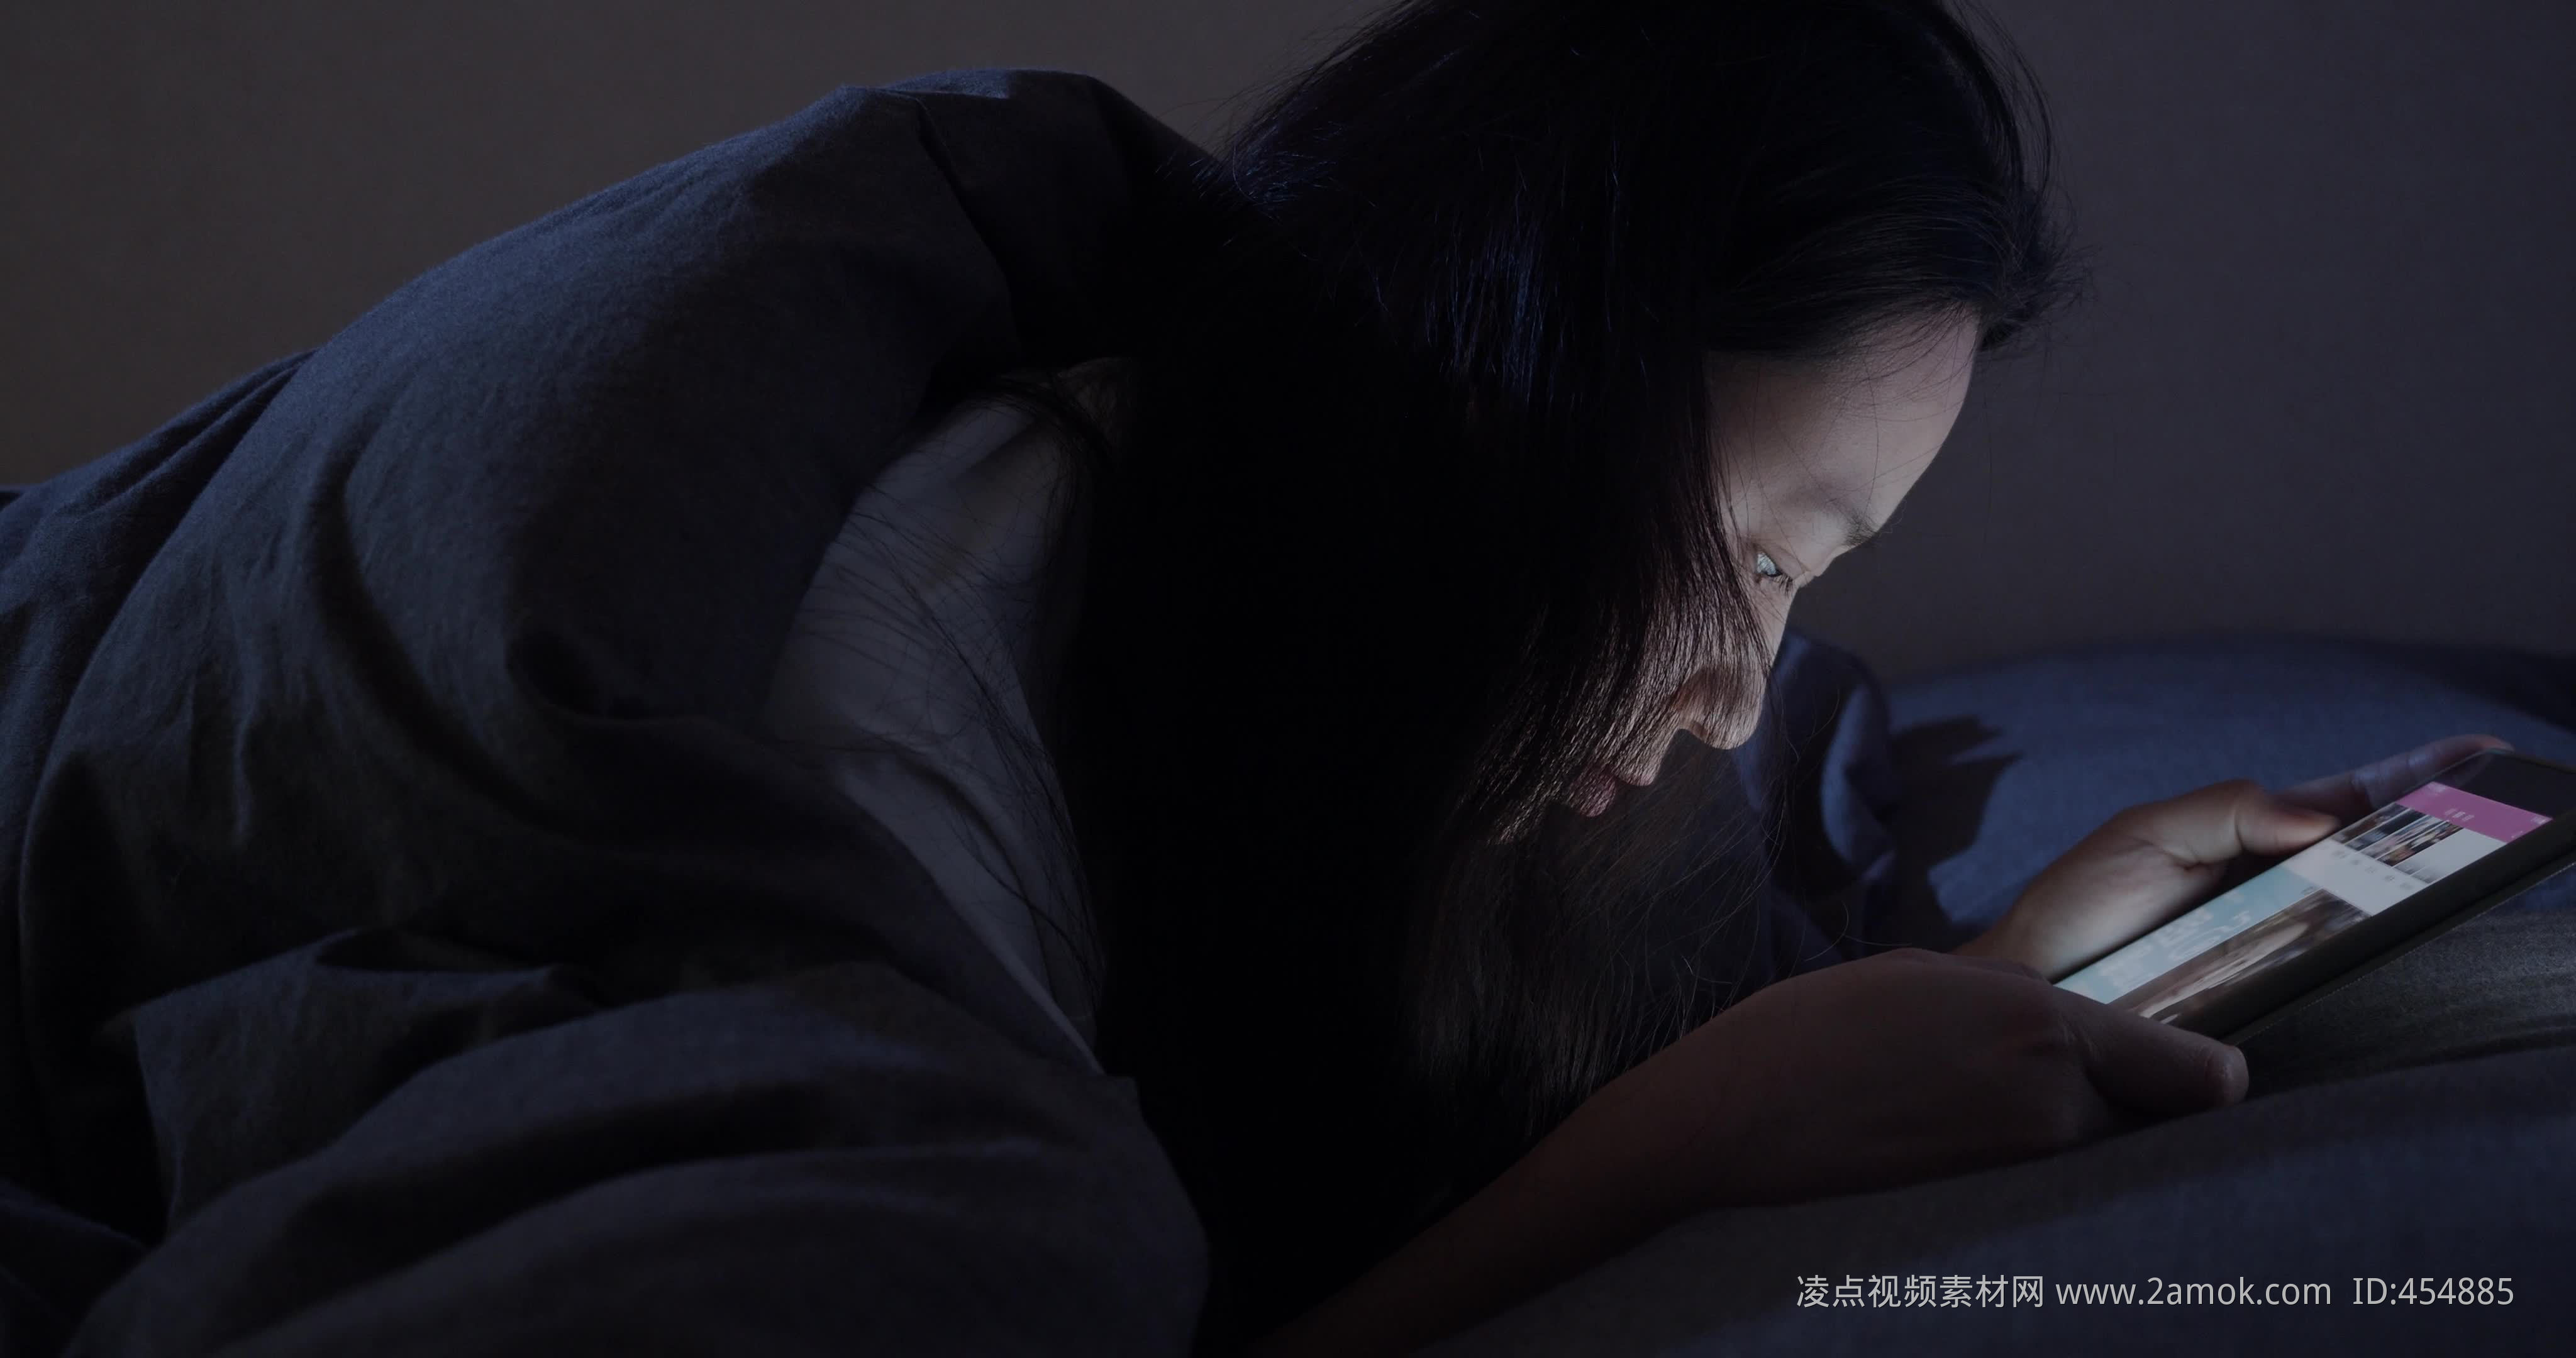 疲劳的年轻男子在办公室揉眼睛-蓝牛仔影像-中国原创广告影像素材